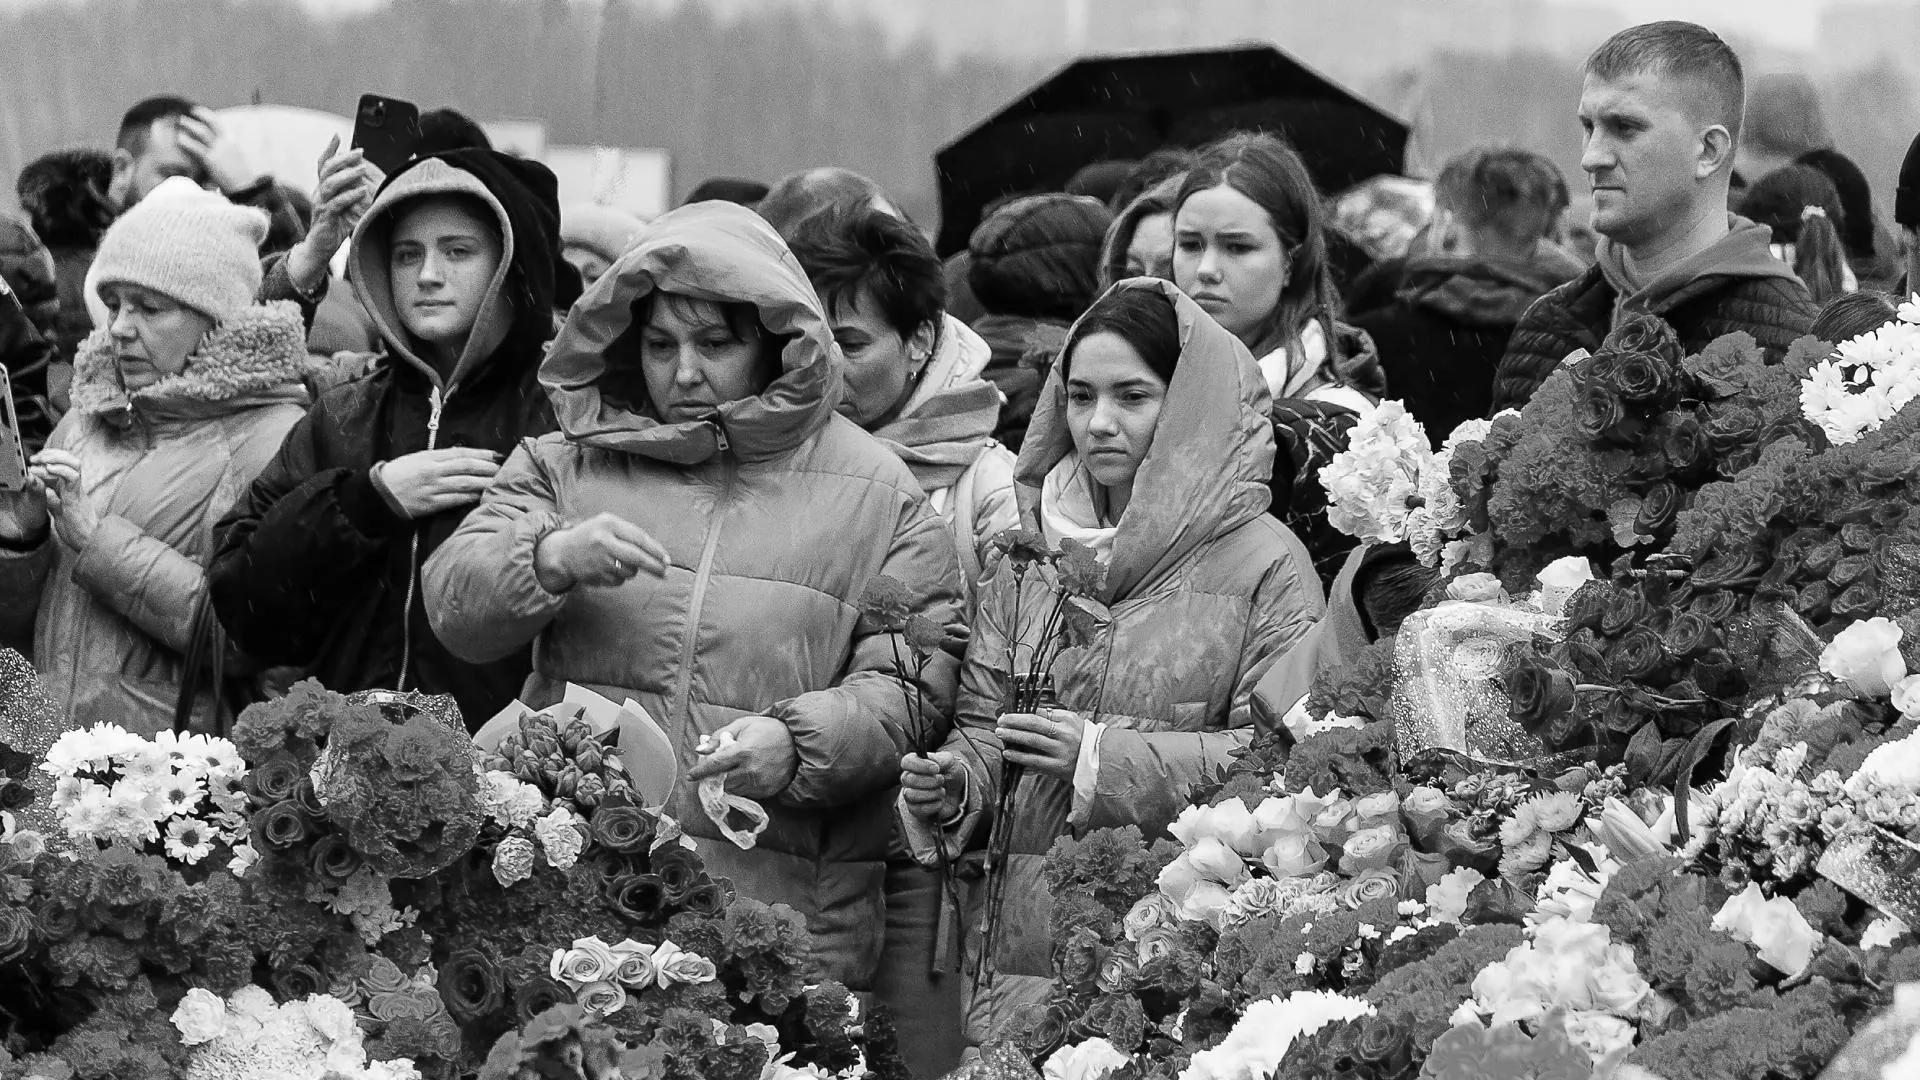 Формирование гражданского общества. Как национальная трагедия проявила взросление россиян